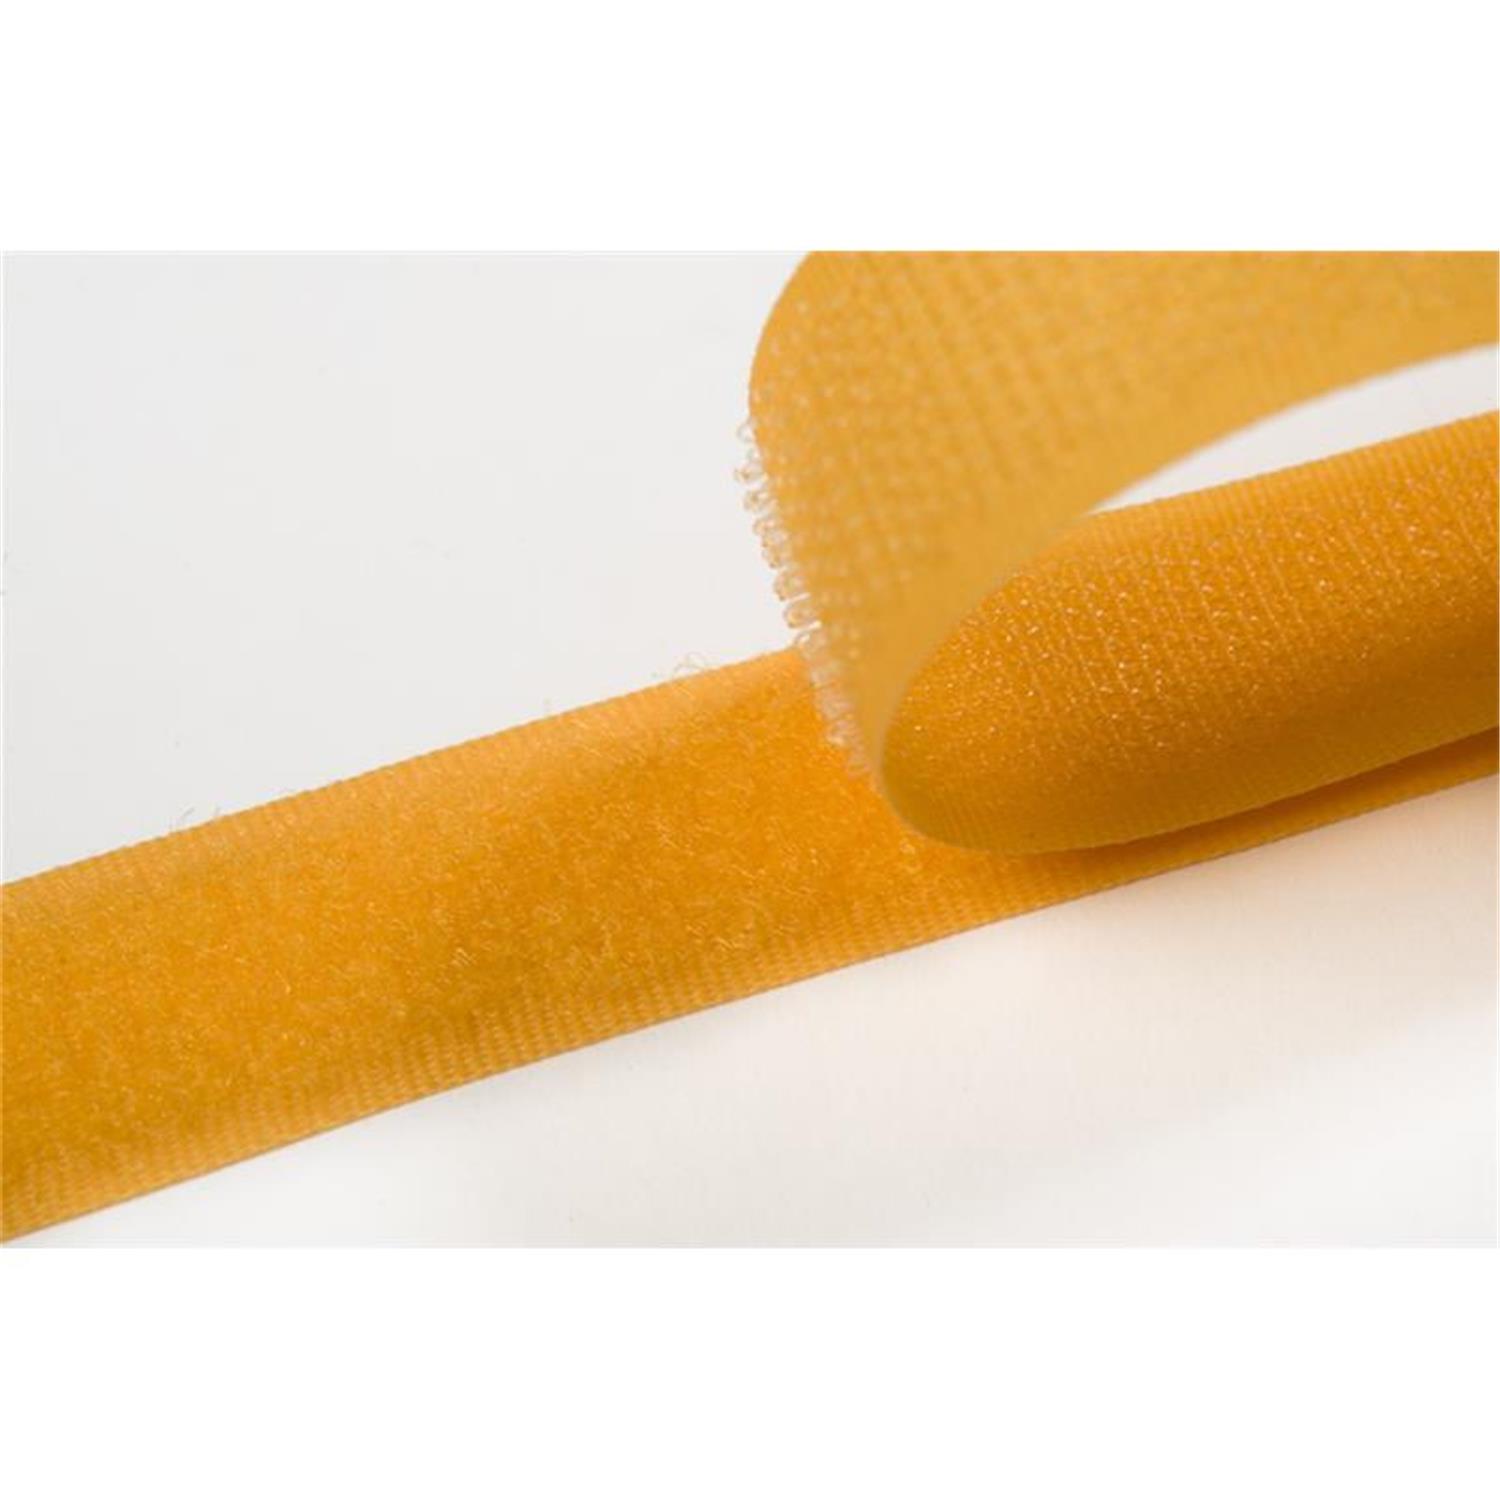 Klettband zum aufnähen, 50 mm, gelb #05 25 Meter